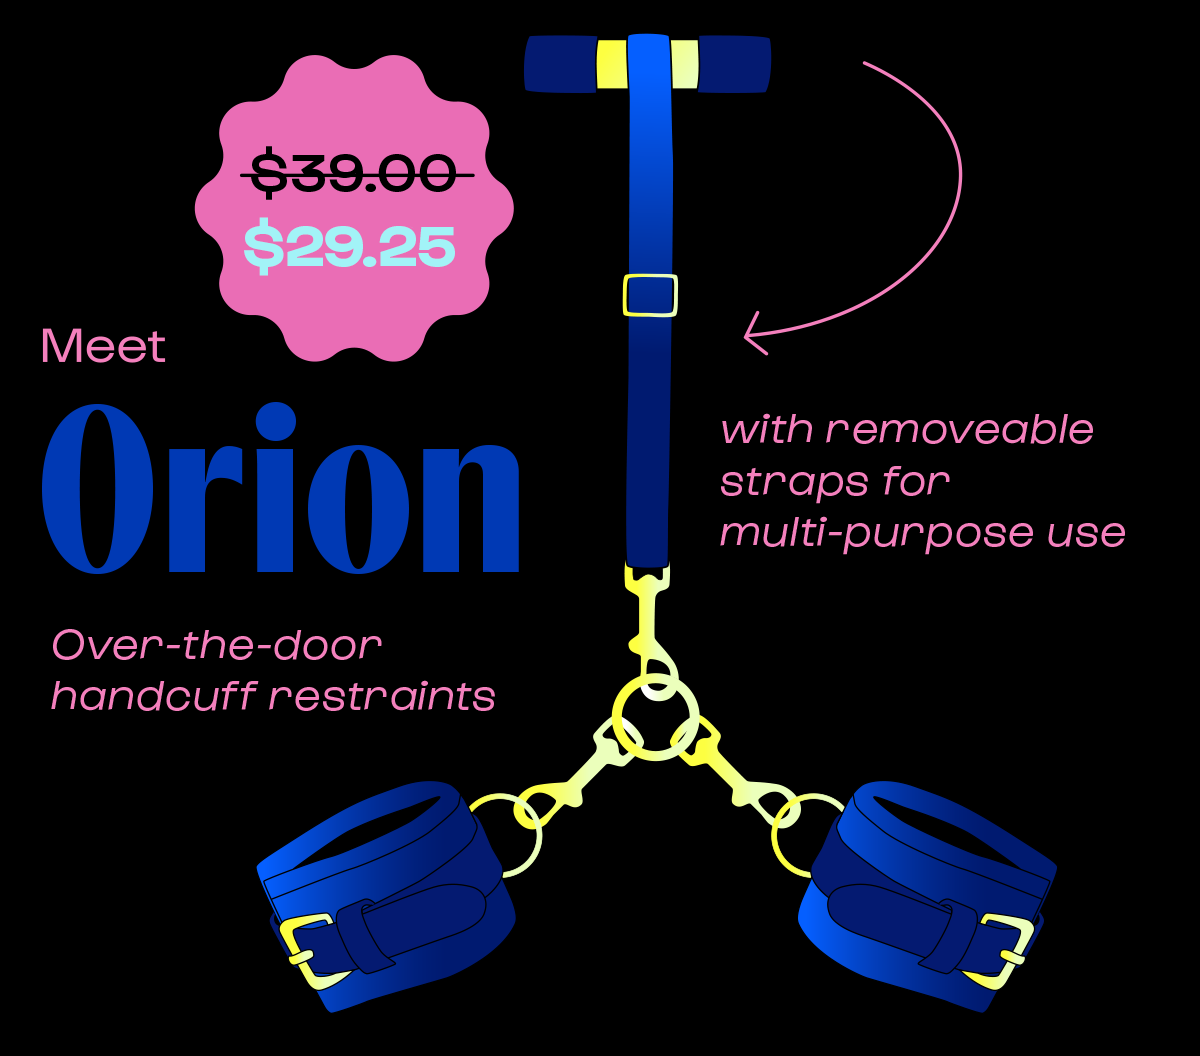 Meet Orion over the door handcuff restraints